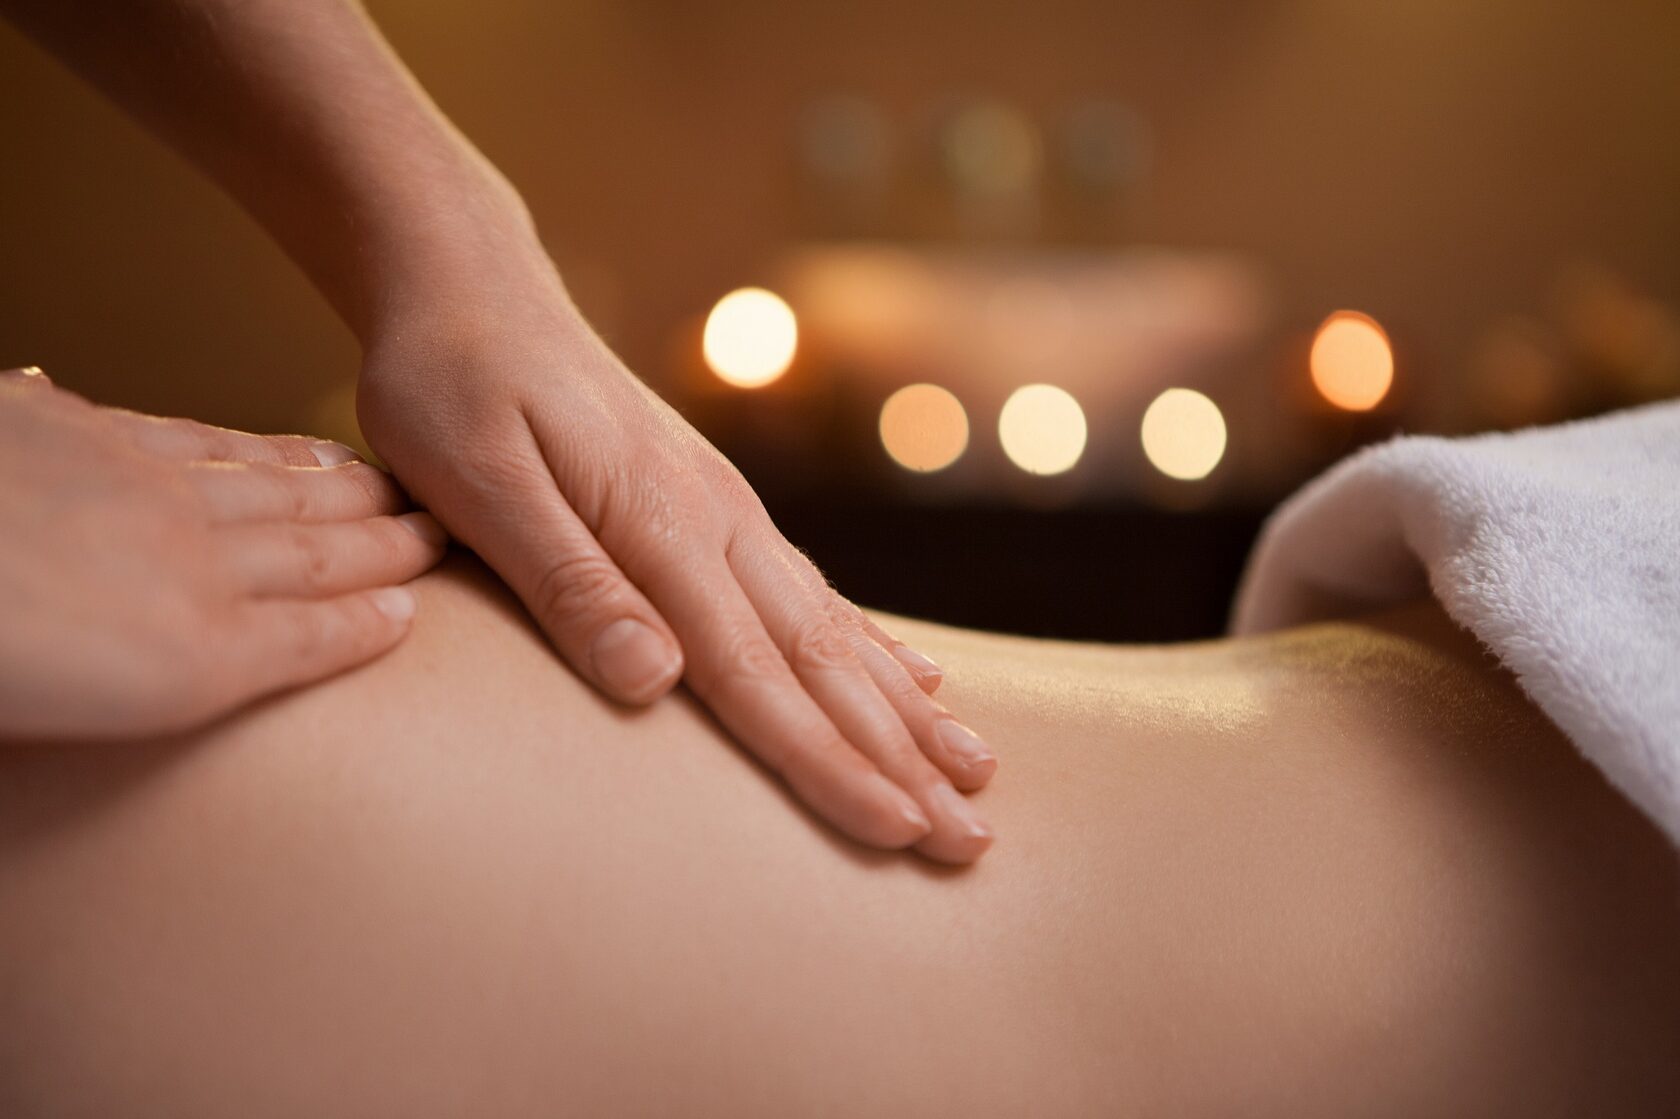 Клуб чувственного массажа. Нежный массаж. Gentle body massage. 7 Причин сходить на массаж.